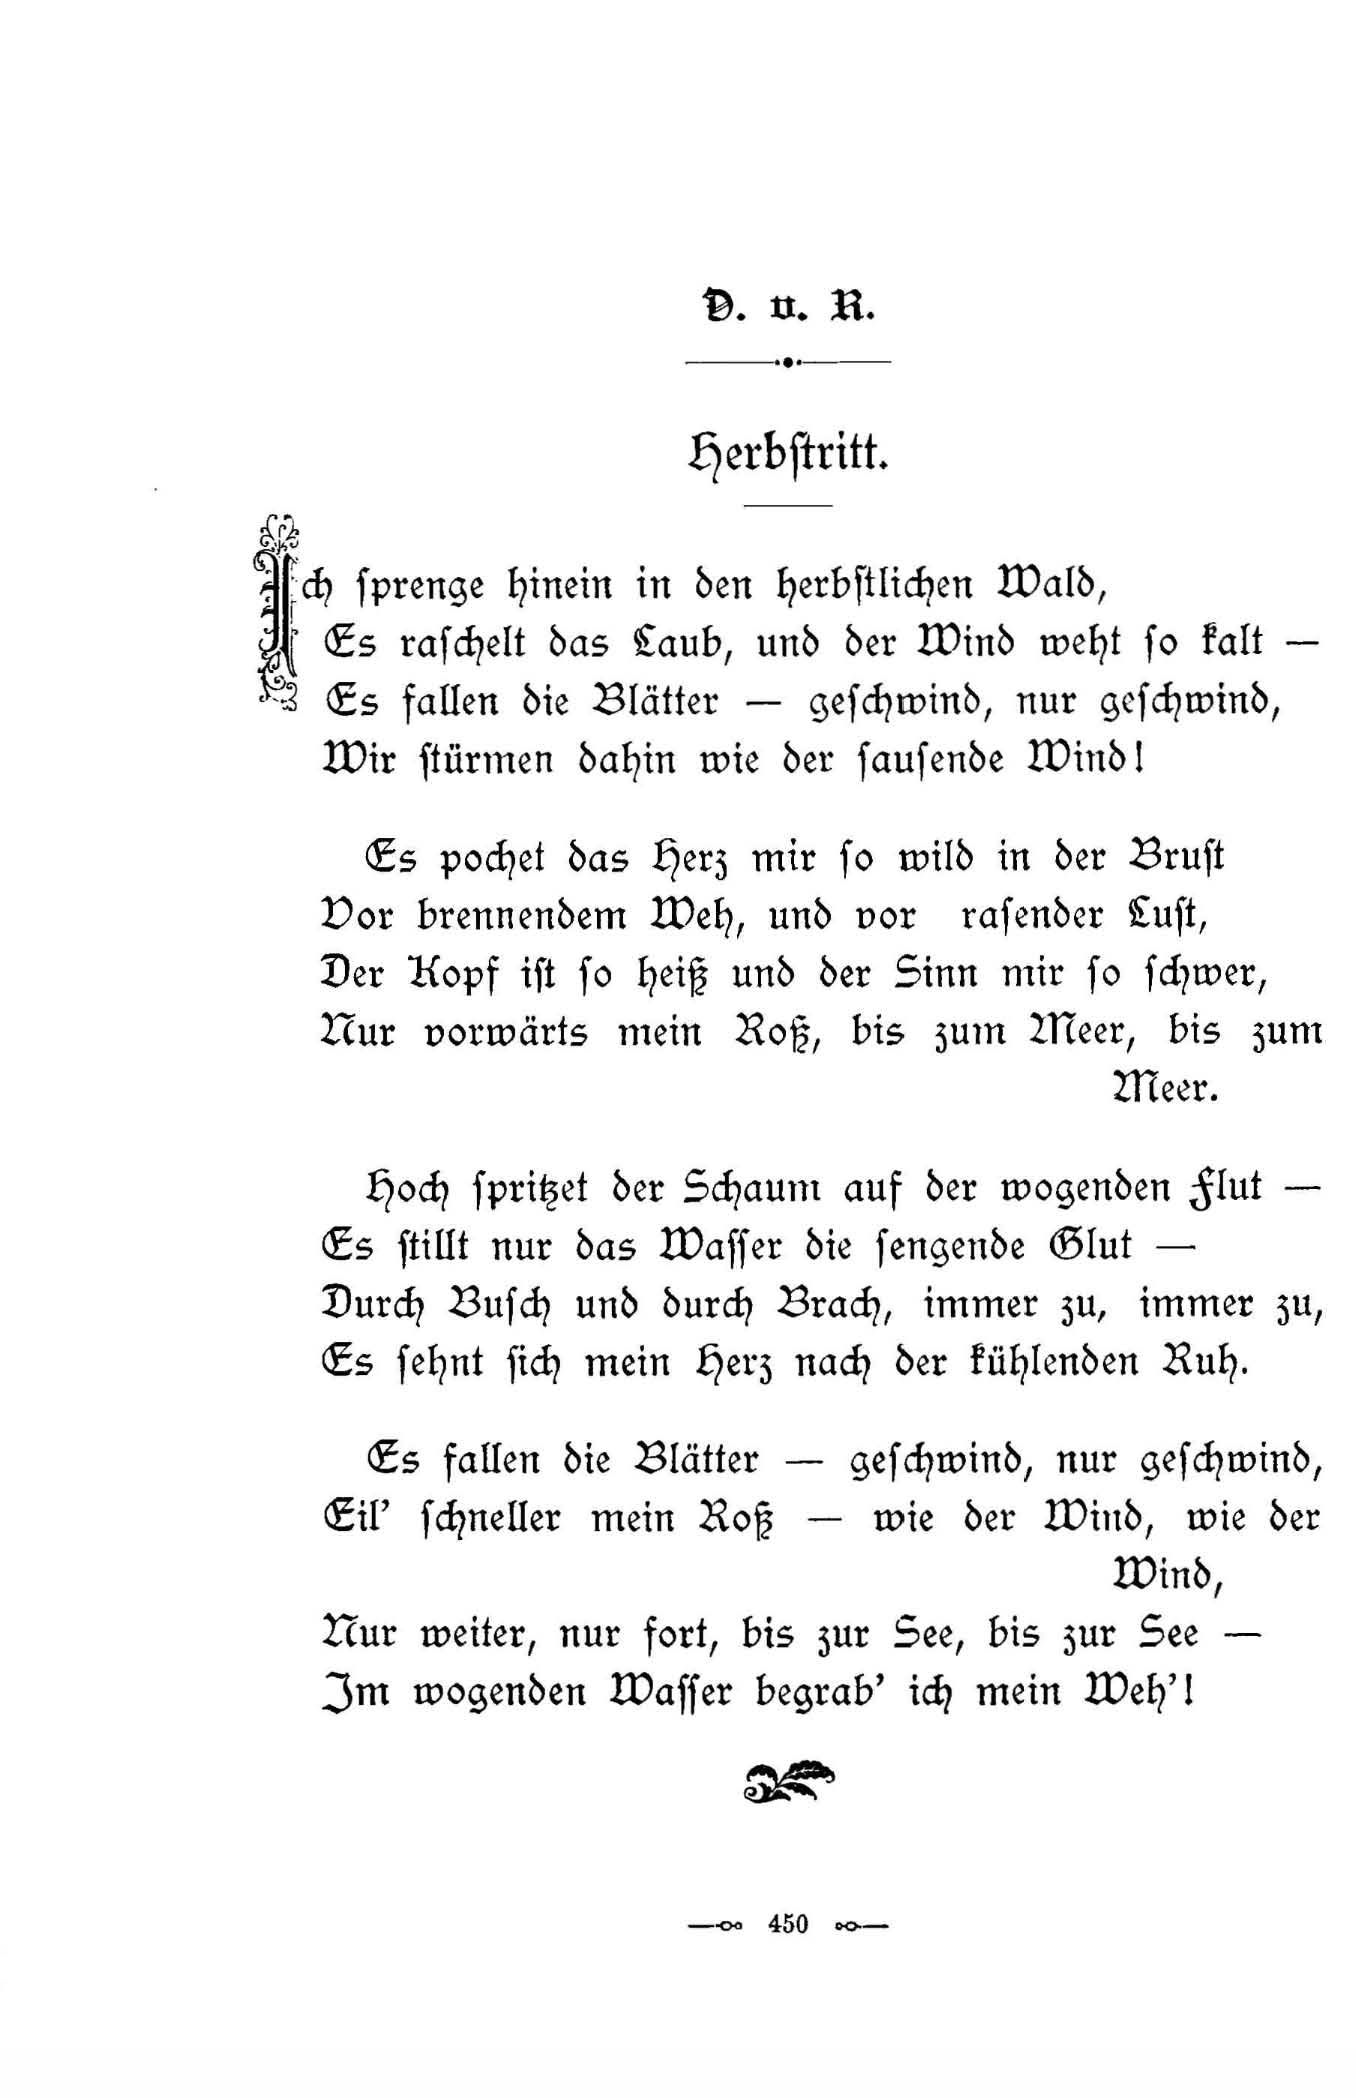 Herbstritt (1896) | 1. (450) Основной текст